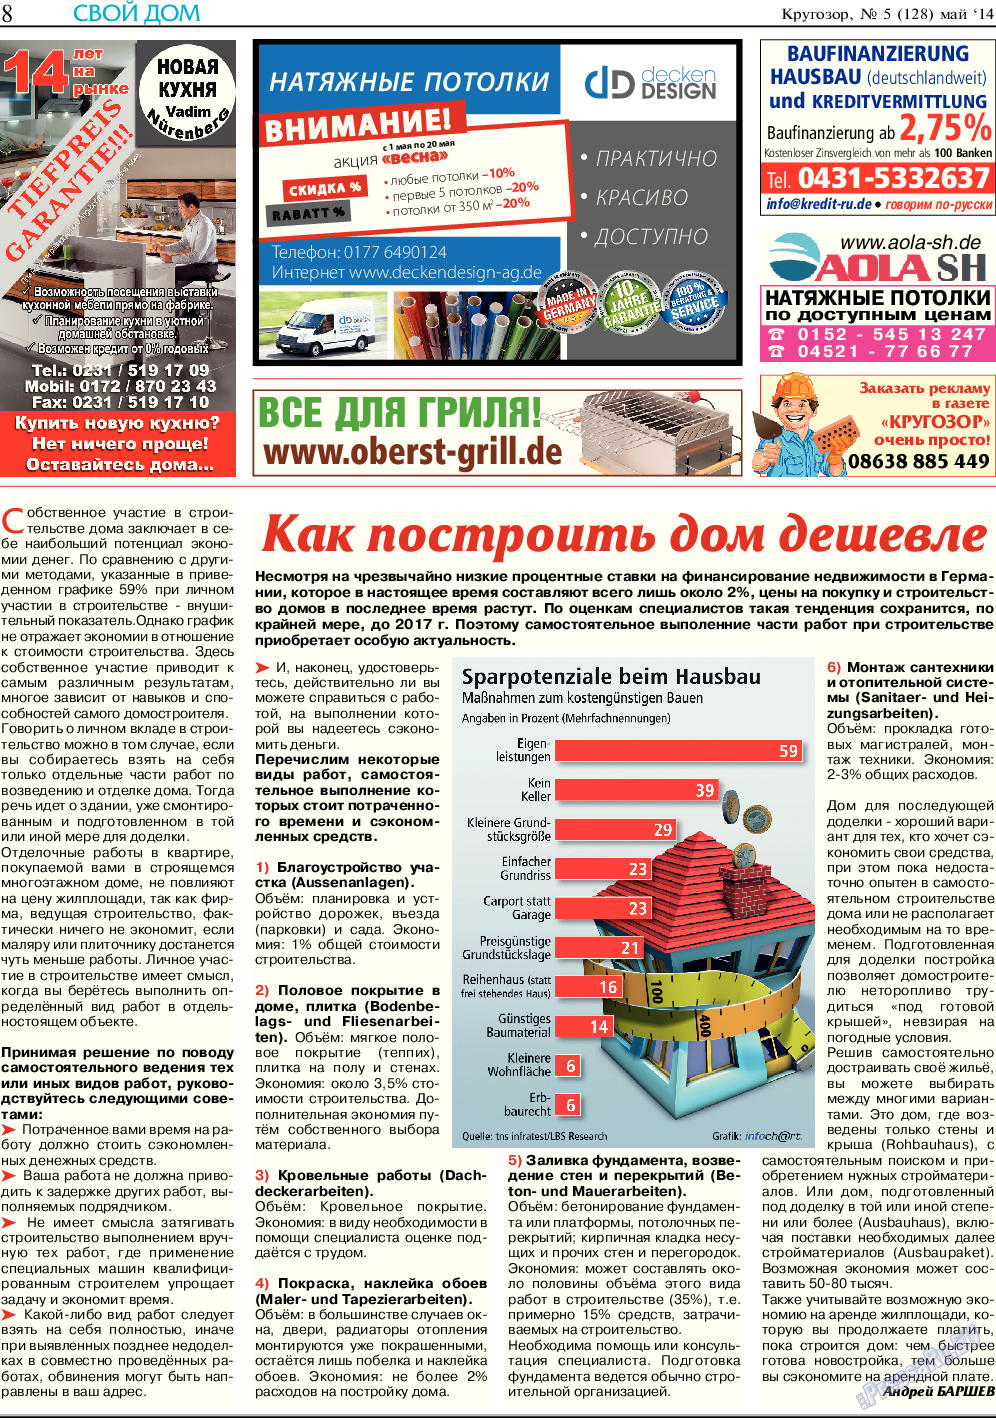 Кругозор, газета. 2014 №5 стр.8